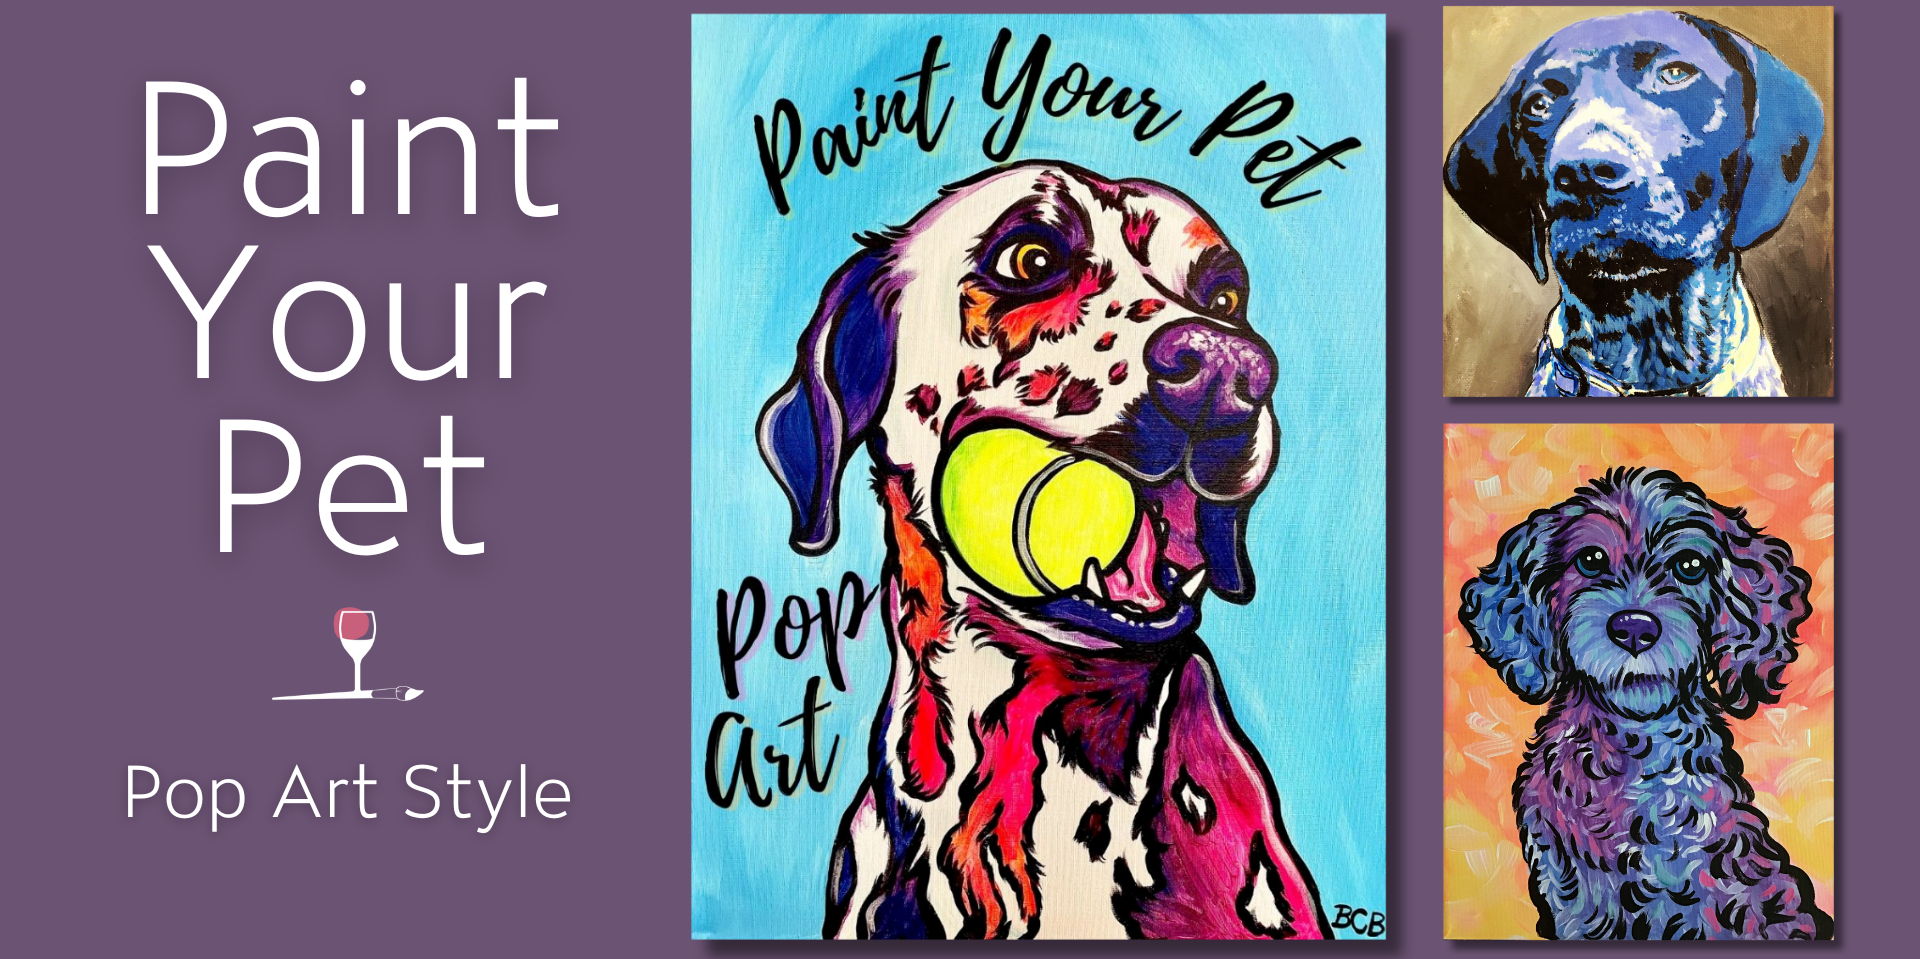 Pop Art Paint Your Pet promotional image